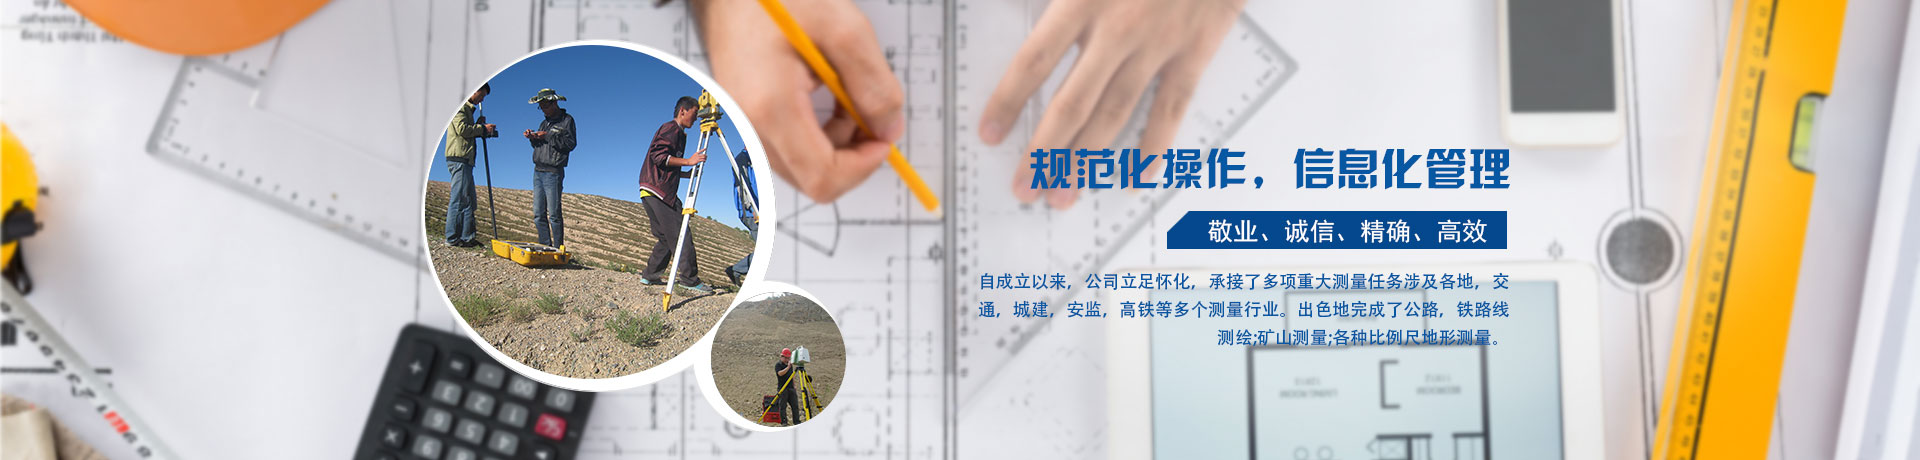 怀化方圆测绘工程有限公司_控制测量|地形测量|矿山测量|工程施工测量